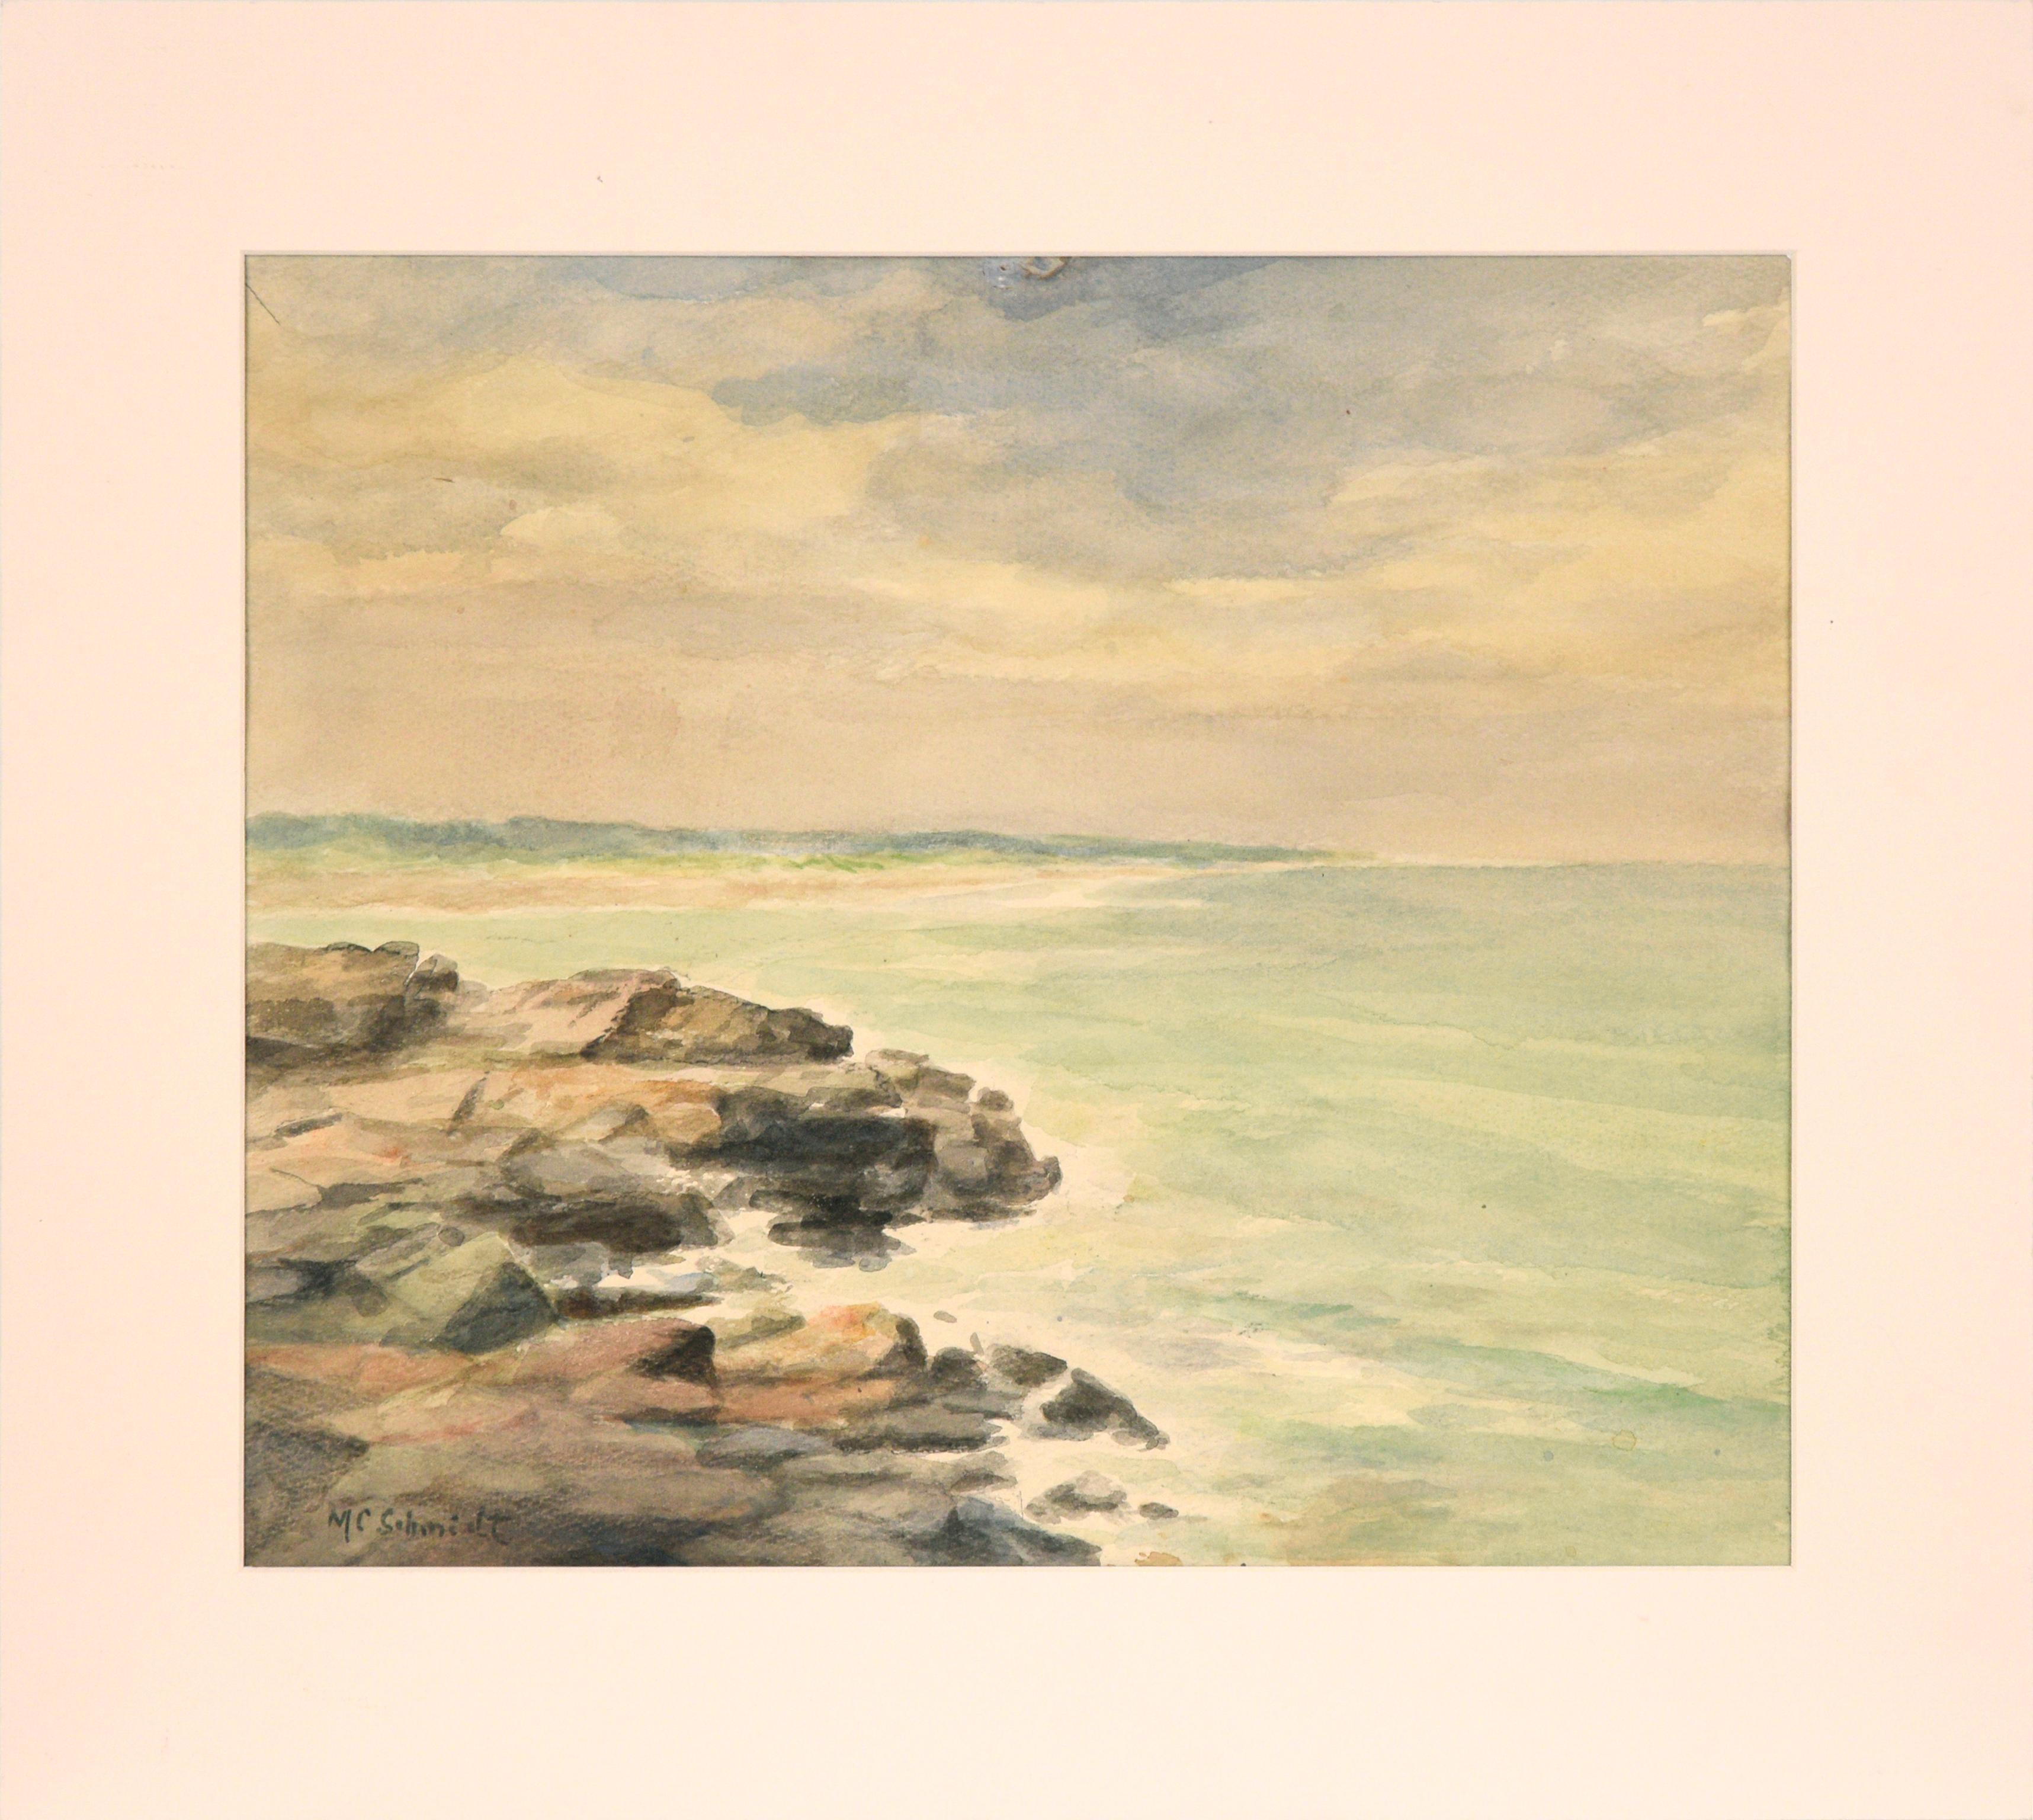 M. C. Schmidt Landscape Art - Rocky Shore, Mid Century Watercolor Seascape